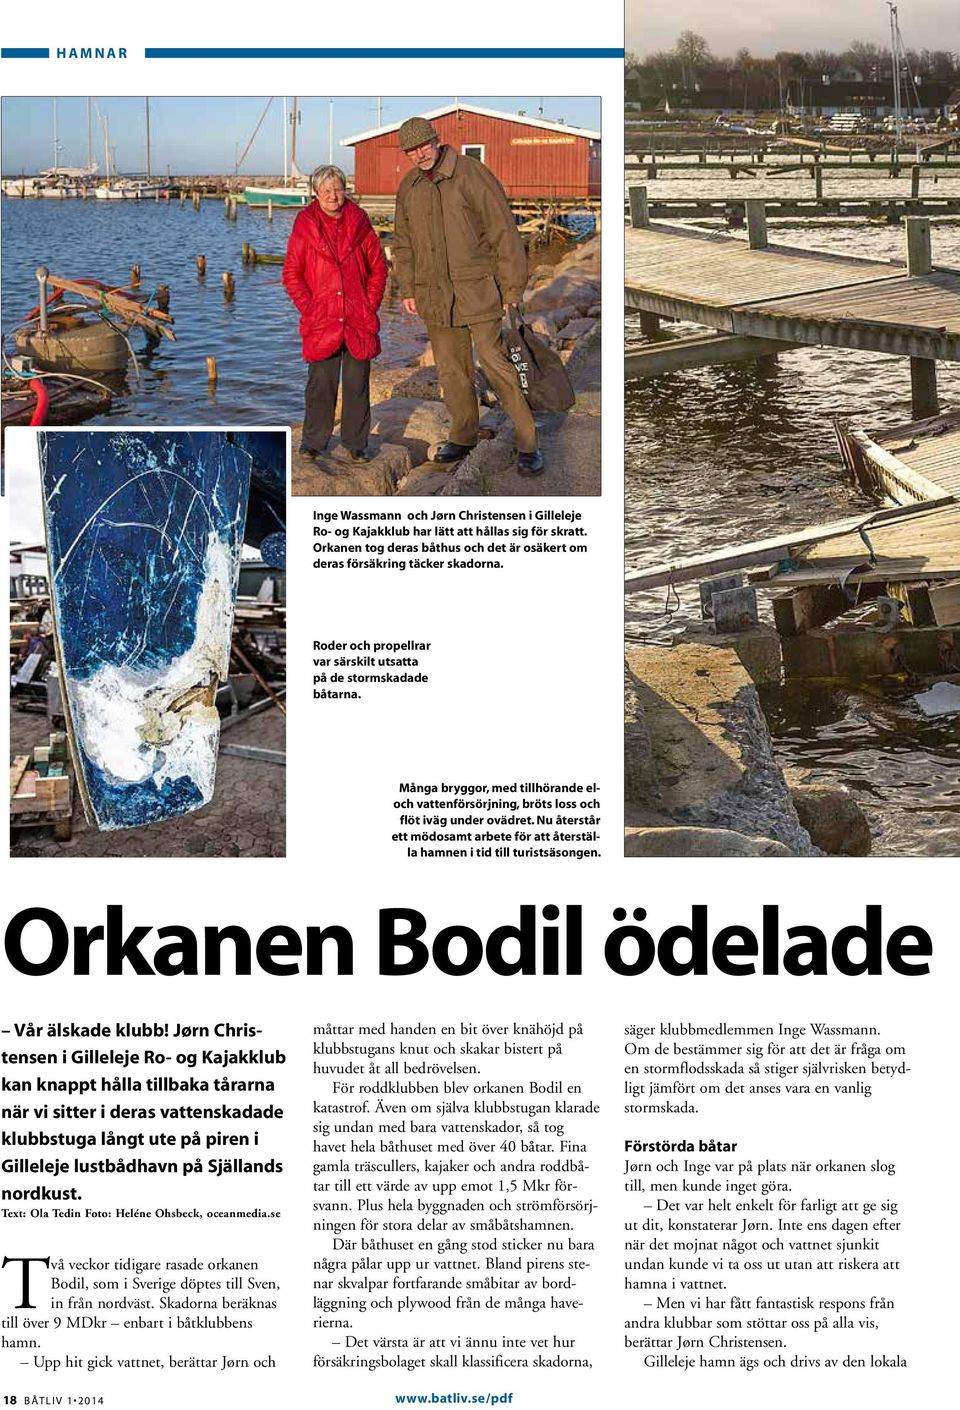 Nu återstår ett mödosamt arbete för att återställa hamnen i tid till turistsäsongen. Orkanen Bodil ödelade Vår älskade klubb!